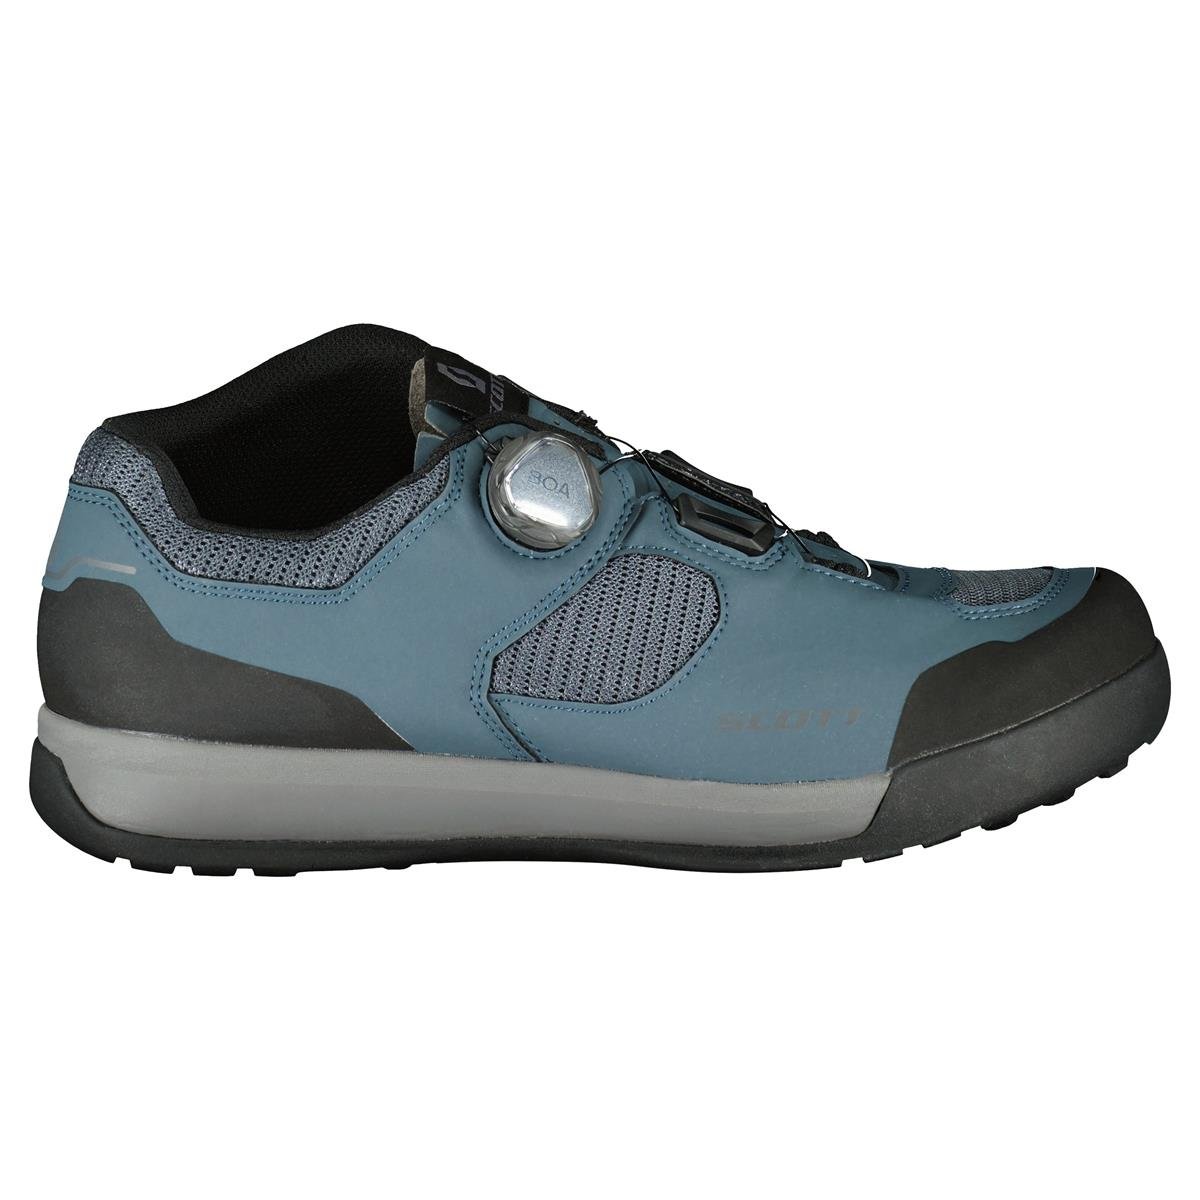 Scott Chaussures VTT SHR-ALP Boa Evo Tuned Bleu mat/Noir